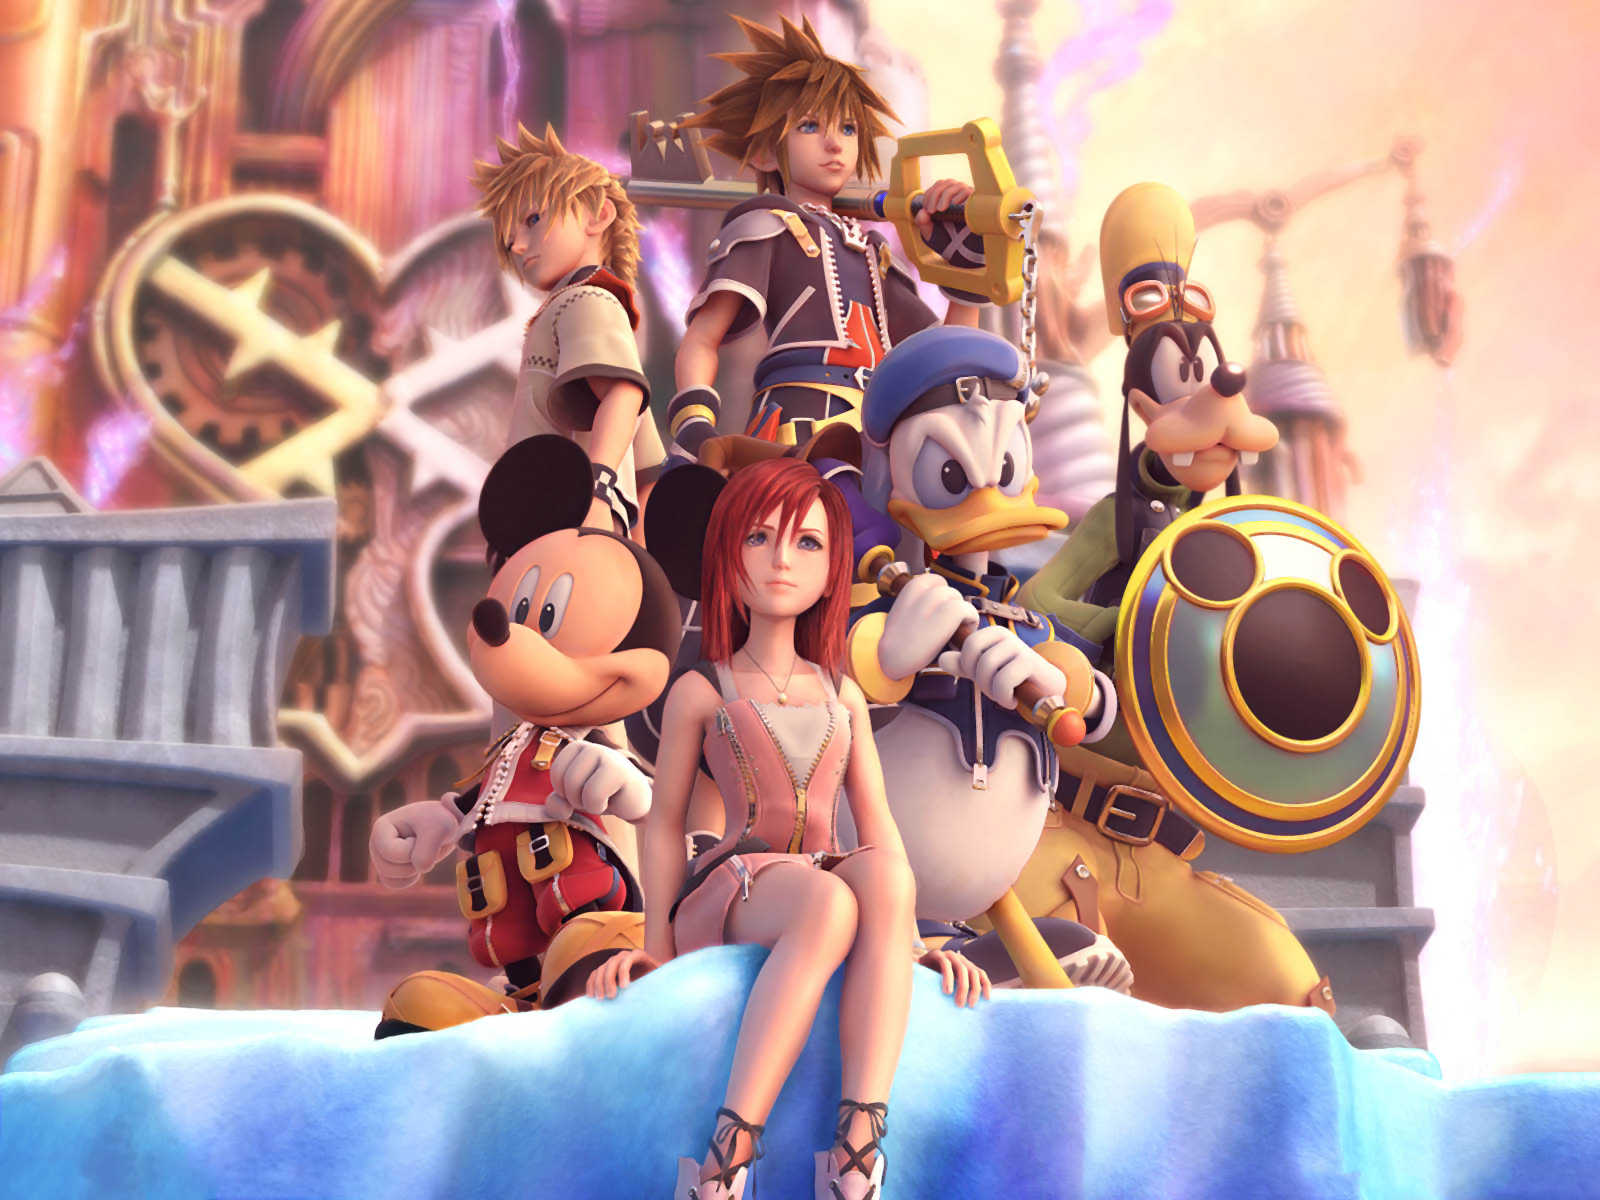 Скачать обои бесплатно Видеоигры, Kingdom Hearts картинка на рабочий стол ПК